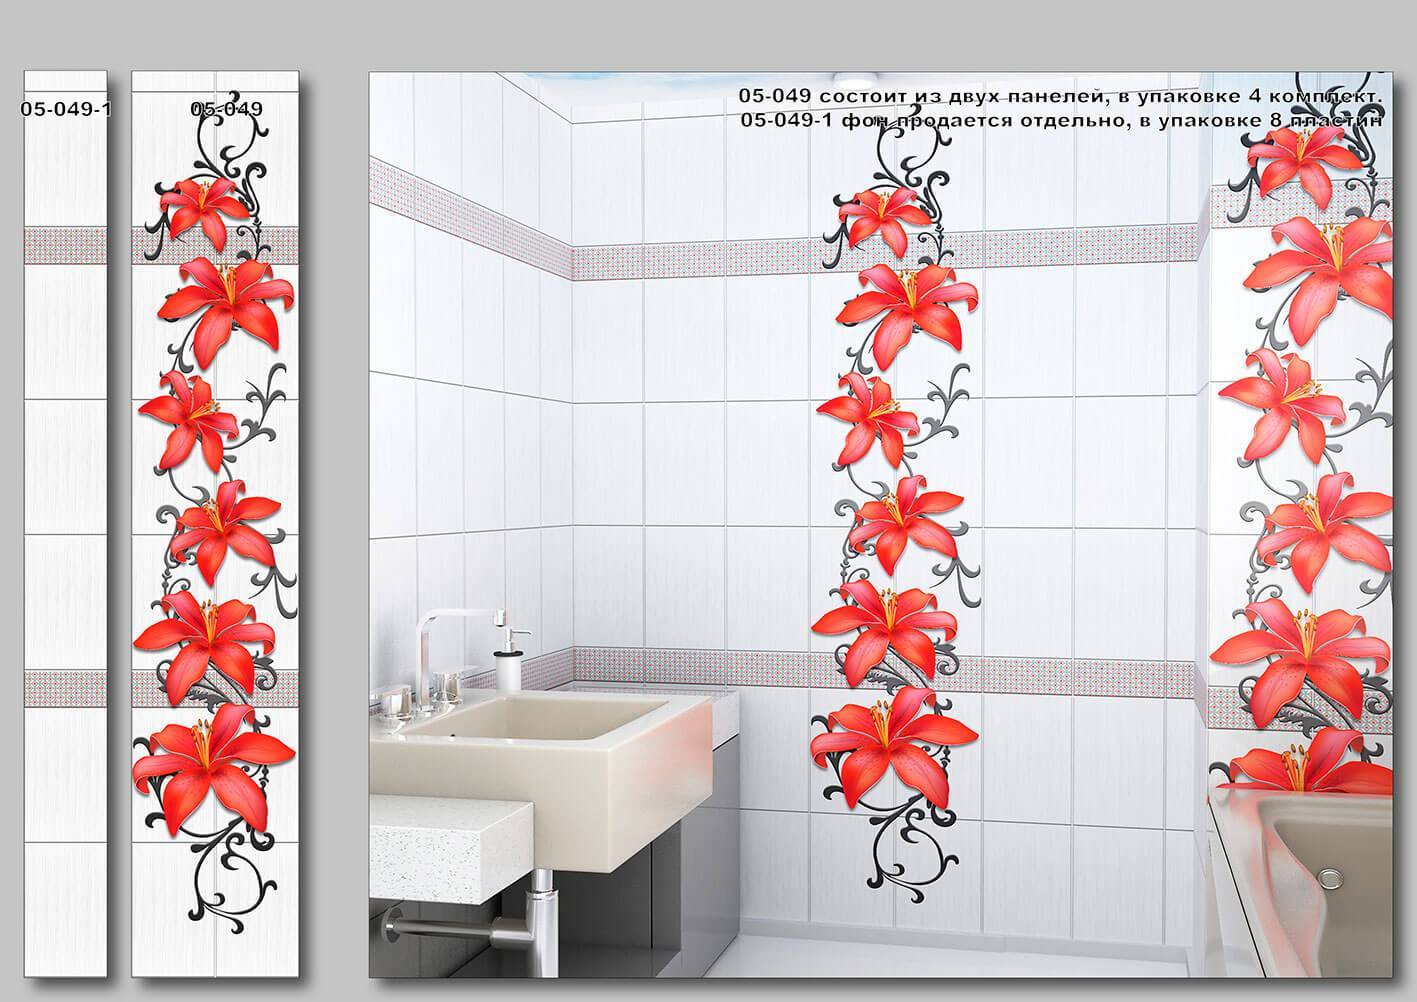 Магазин панелей для ванной. Панель ПВХ 250*2700*9мм (8шт=5,4м2) (01-044л Ротонда). Панель ПВХ Азори. Панели ПВХ для ванной. Пластиковые панели для ванной комнаты.